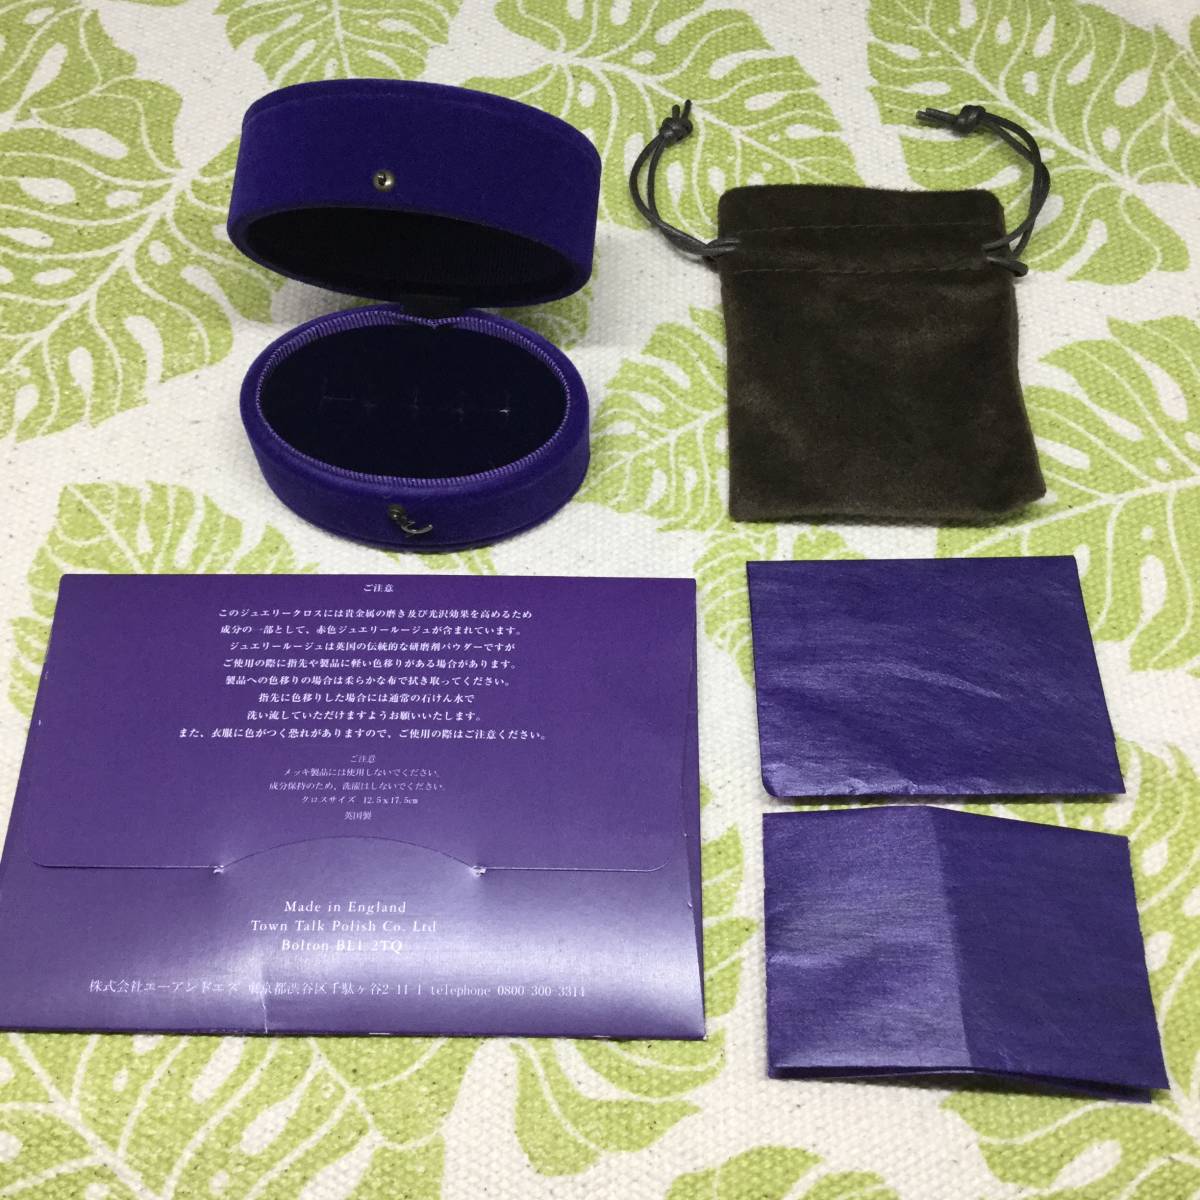 [f] agete Agete box коробка пустой коробка сумка ювелирные изделия кейс ювелирные изделия Cross фиолетовый защита пакет 